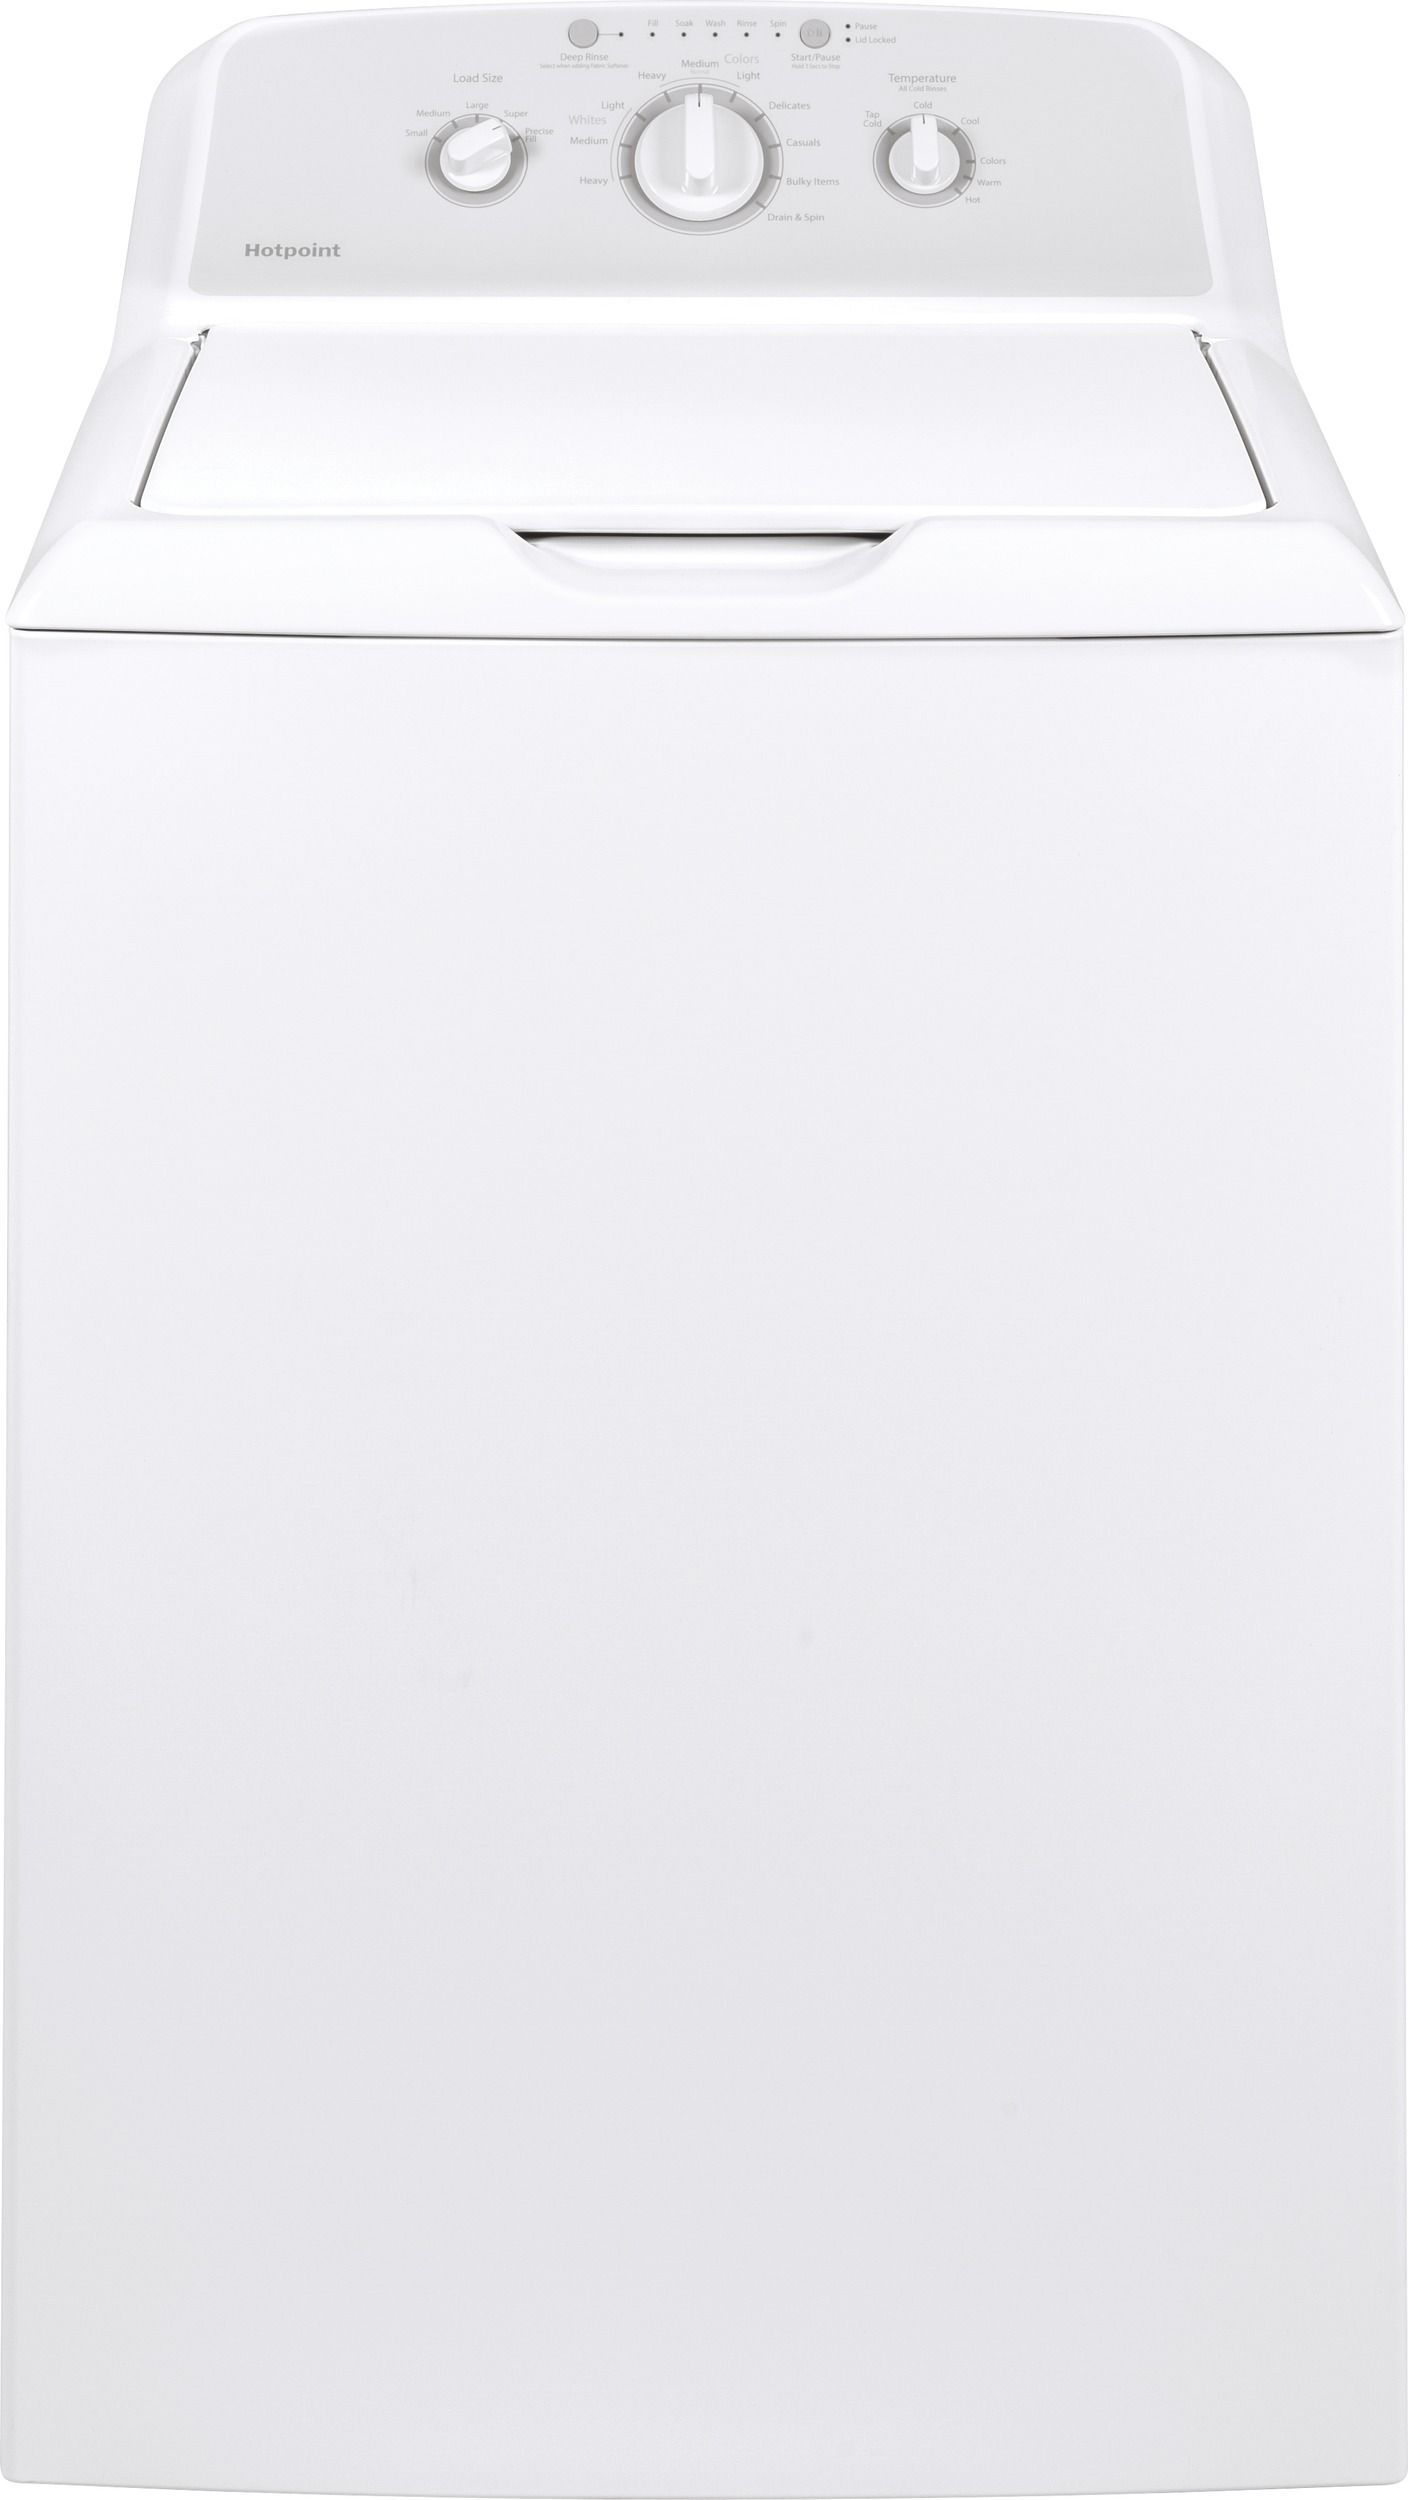 生活家電 衣類乾燥機 Hotpoint® 3.8 Cu. Ft. White Top Load Washer | Dixon's Appliance 